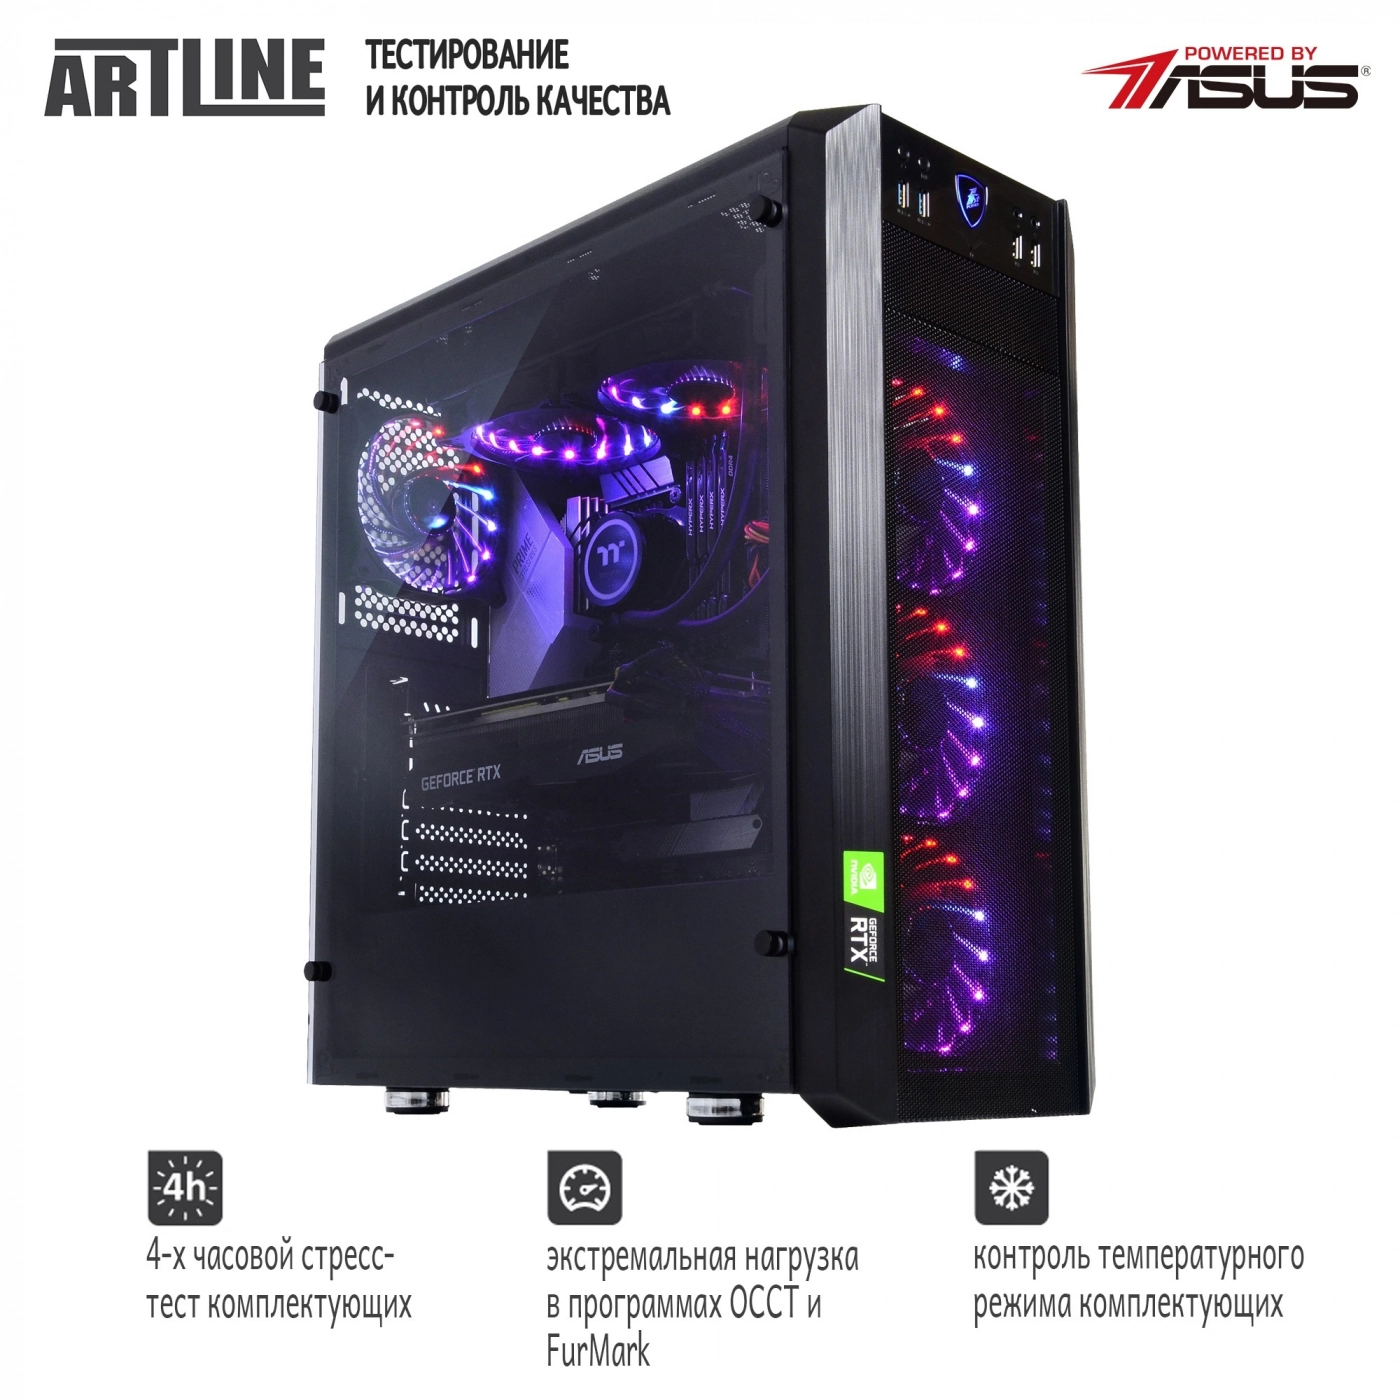 Купить Компьютер ARTLINE Gaming X93v56 - фото 9